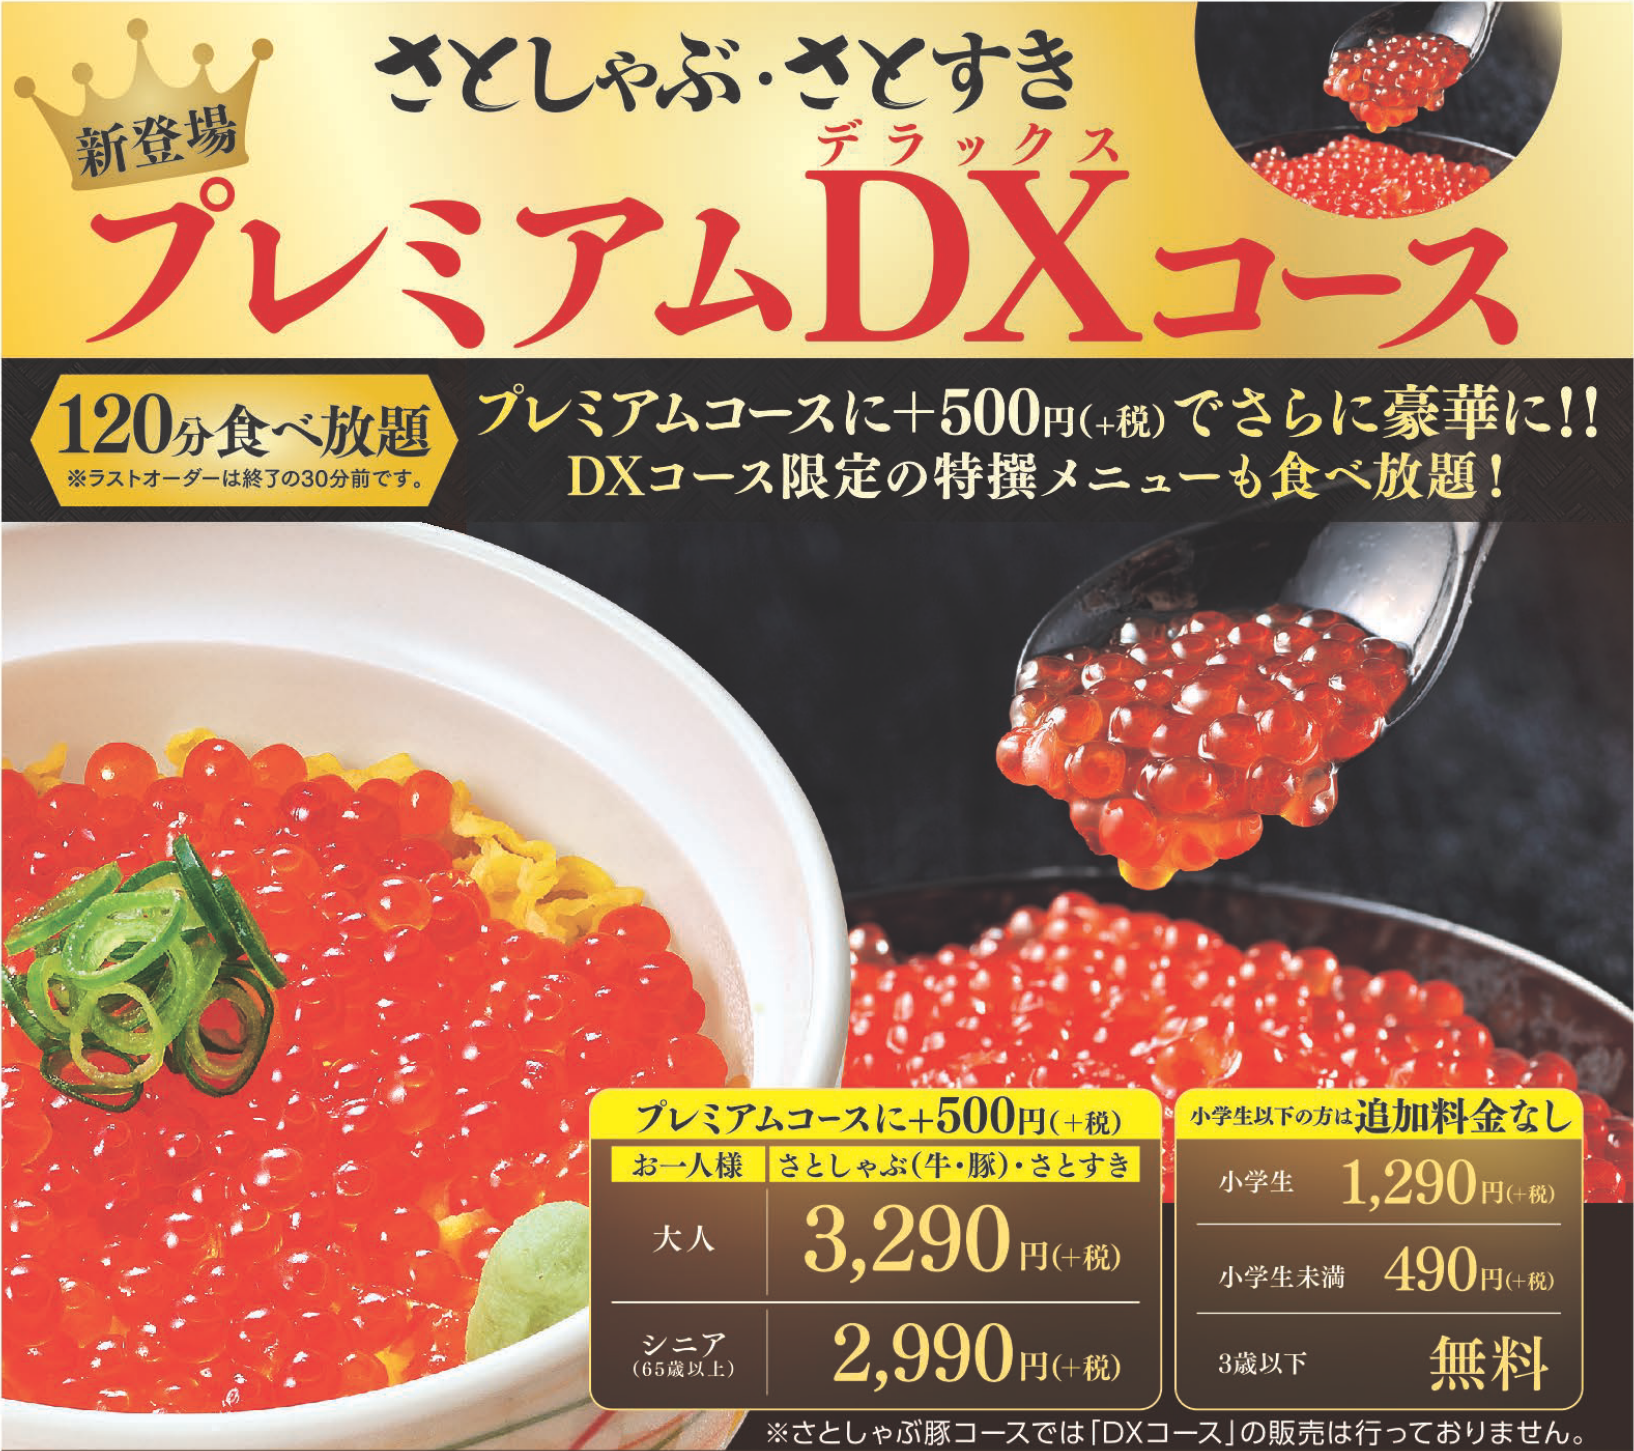 和食さとの新食べ放題 プレミアムdxコース 誕生 サトフードサービス株式会社のプレスリリース